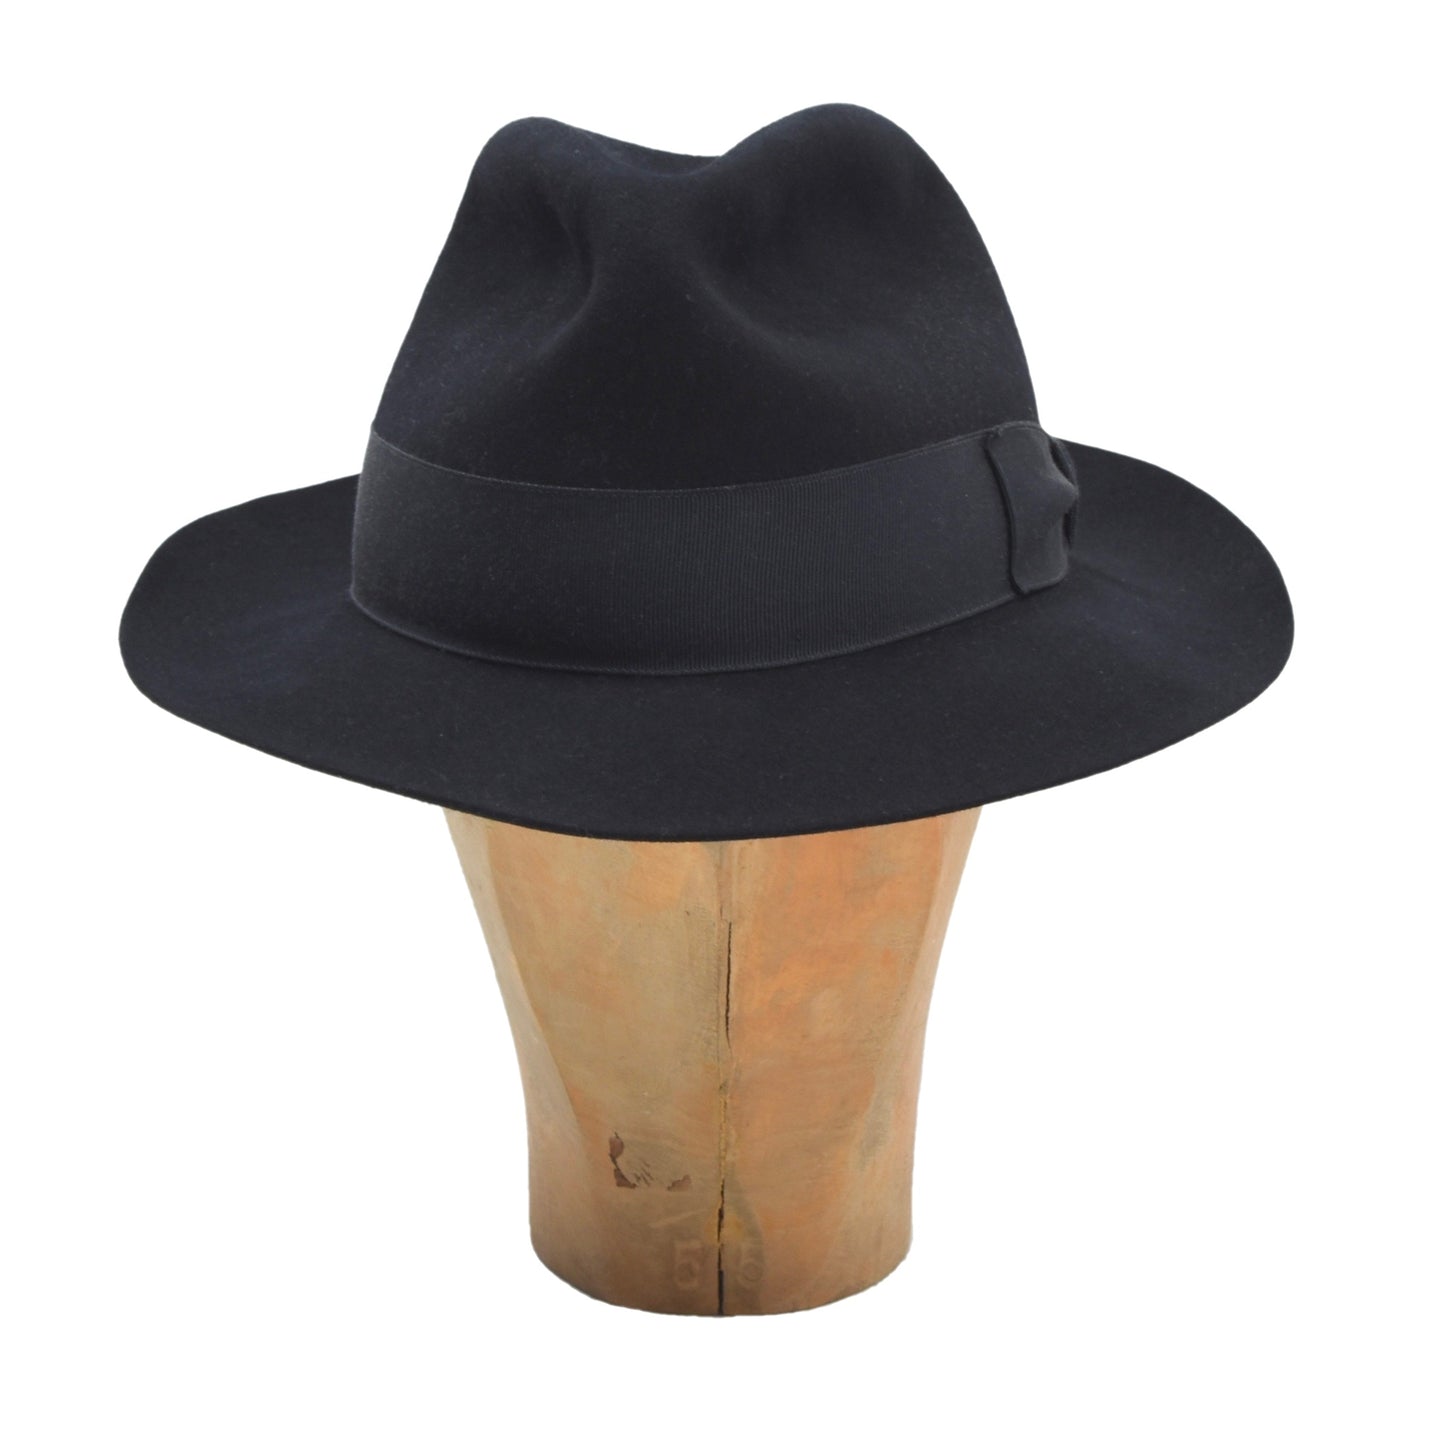 Collins Wien Fedora Hat Size 57 - Navy Blue